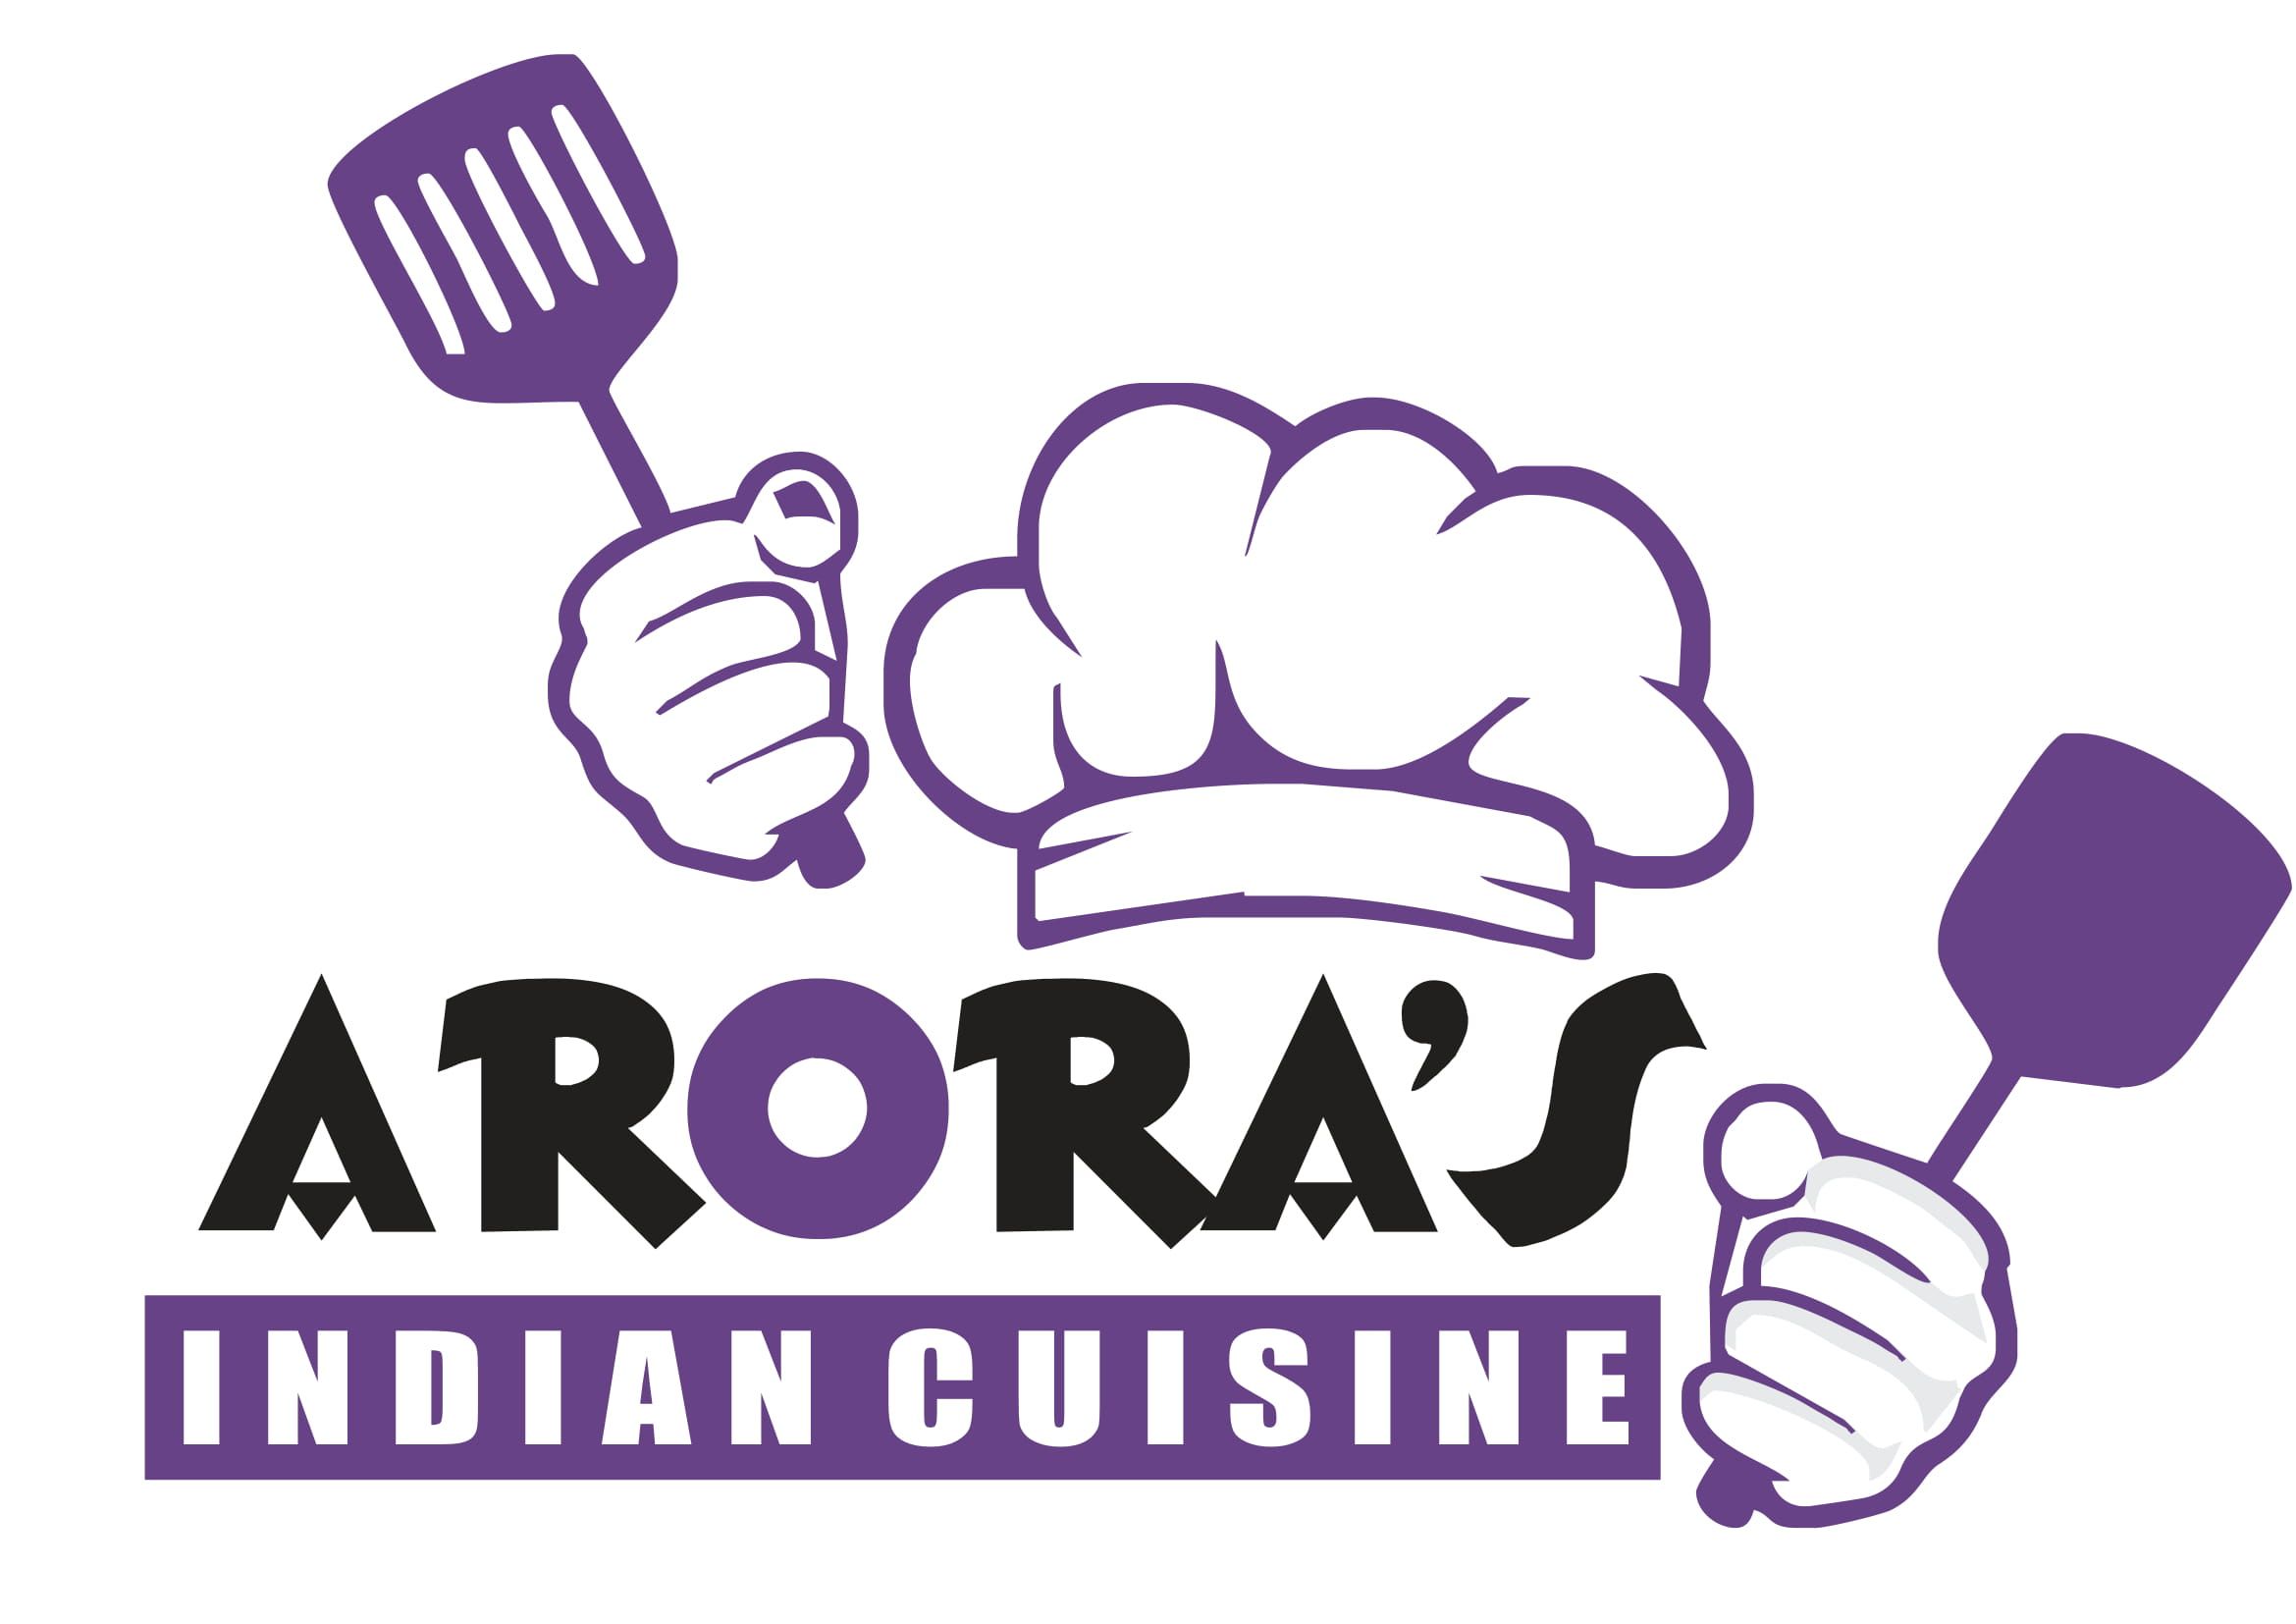 Arora's Indian Cuisine